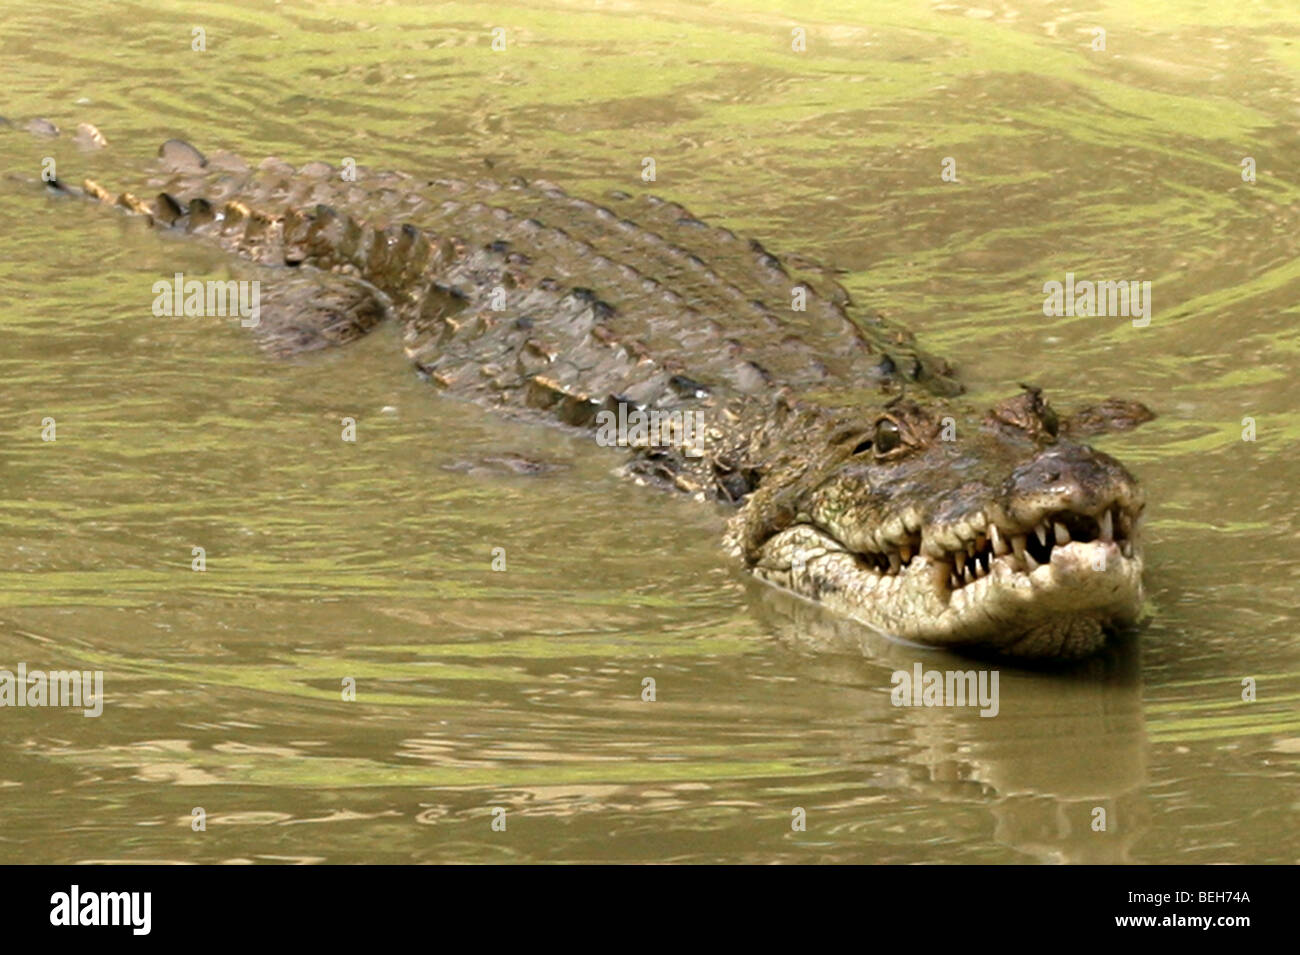 Nile Crocodile, Abuko Nature Reserve, Lamin,The Gambia Stock Photo - Alamy